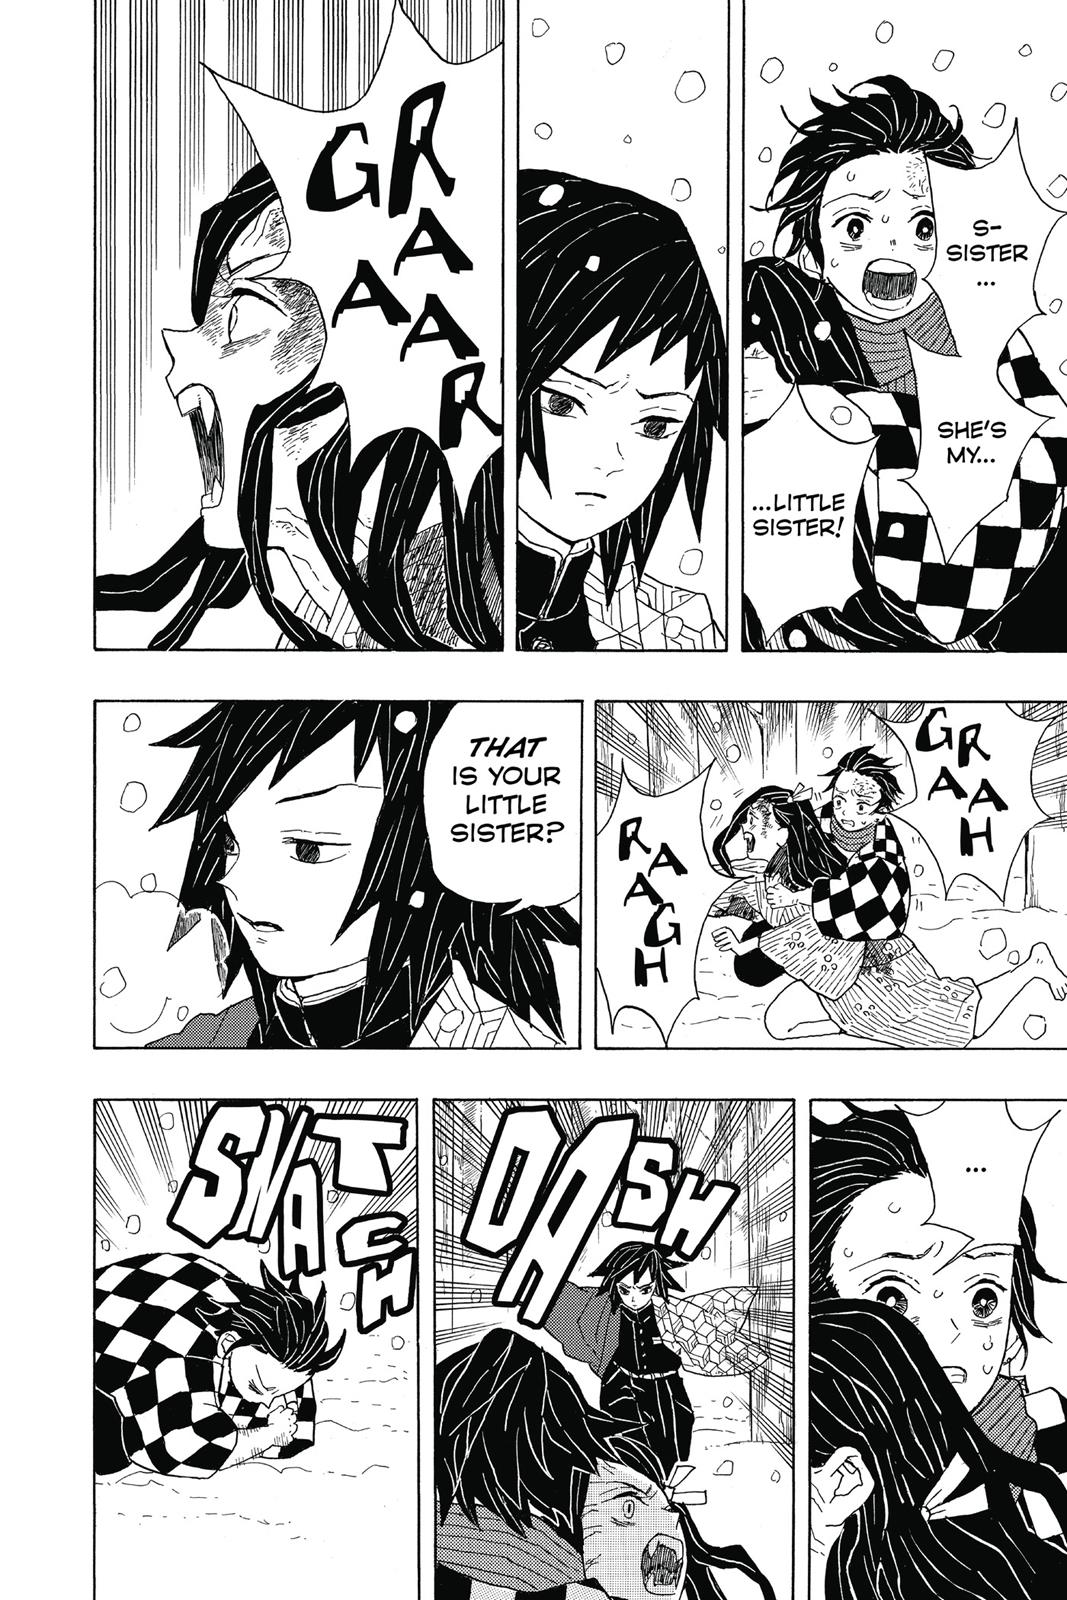 Demon Slayer Manga Manga Chapter - 1 - image 15